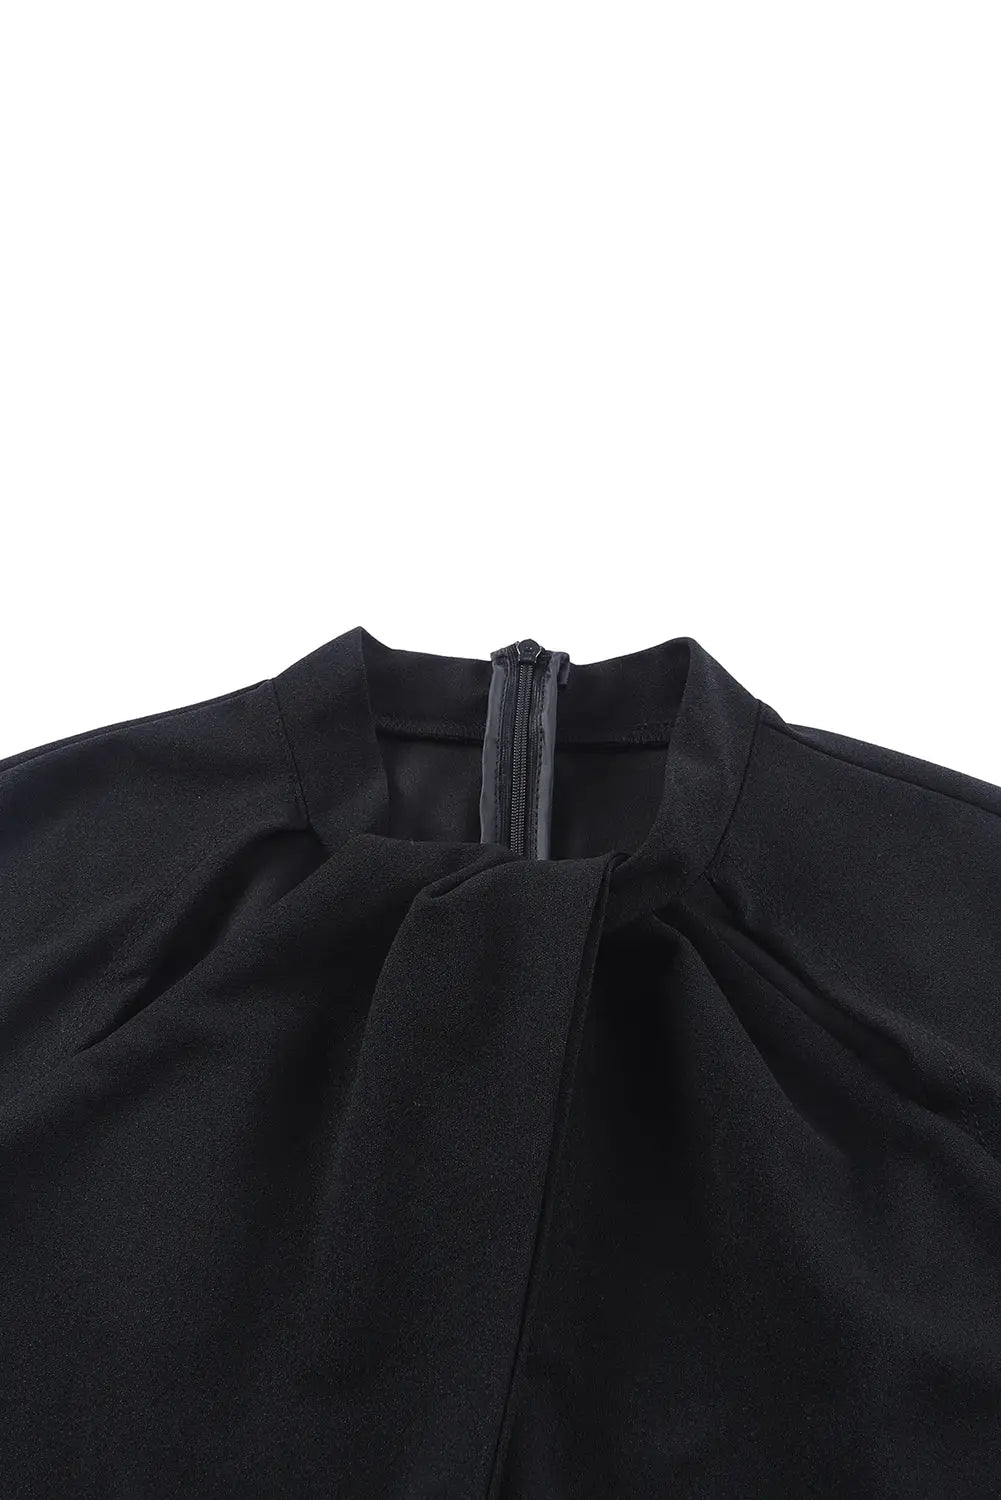 Black cut out neckline cap sleeve high waist jumpsuit - jumpsuits & rompers